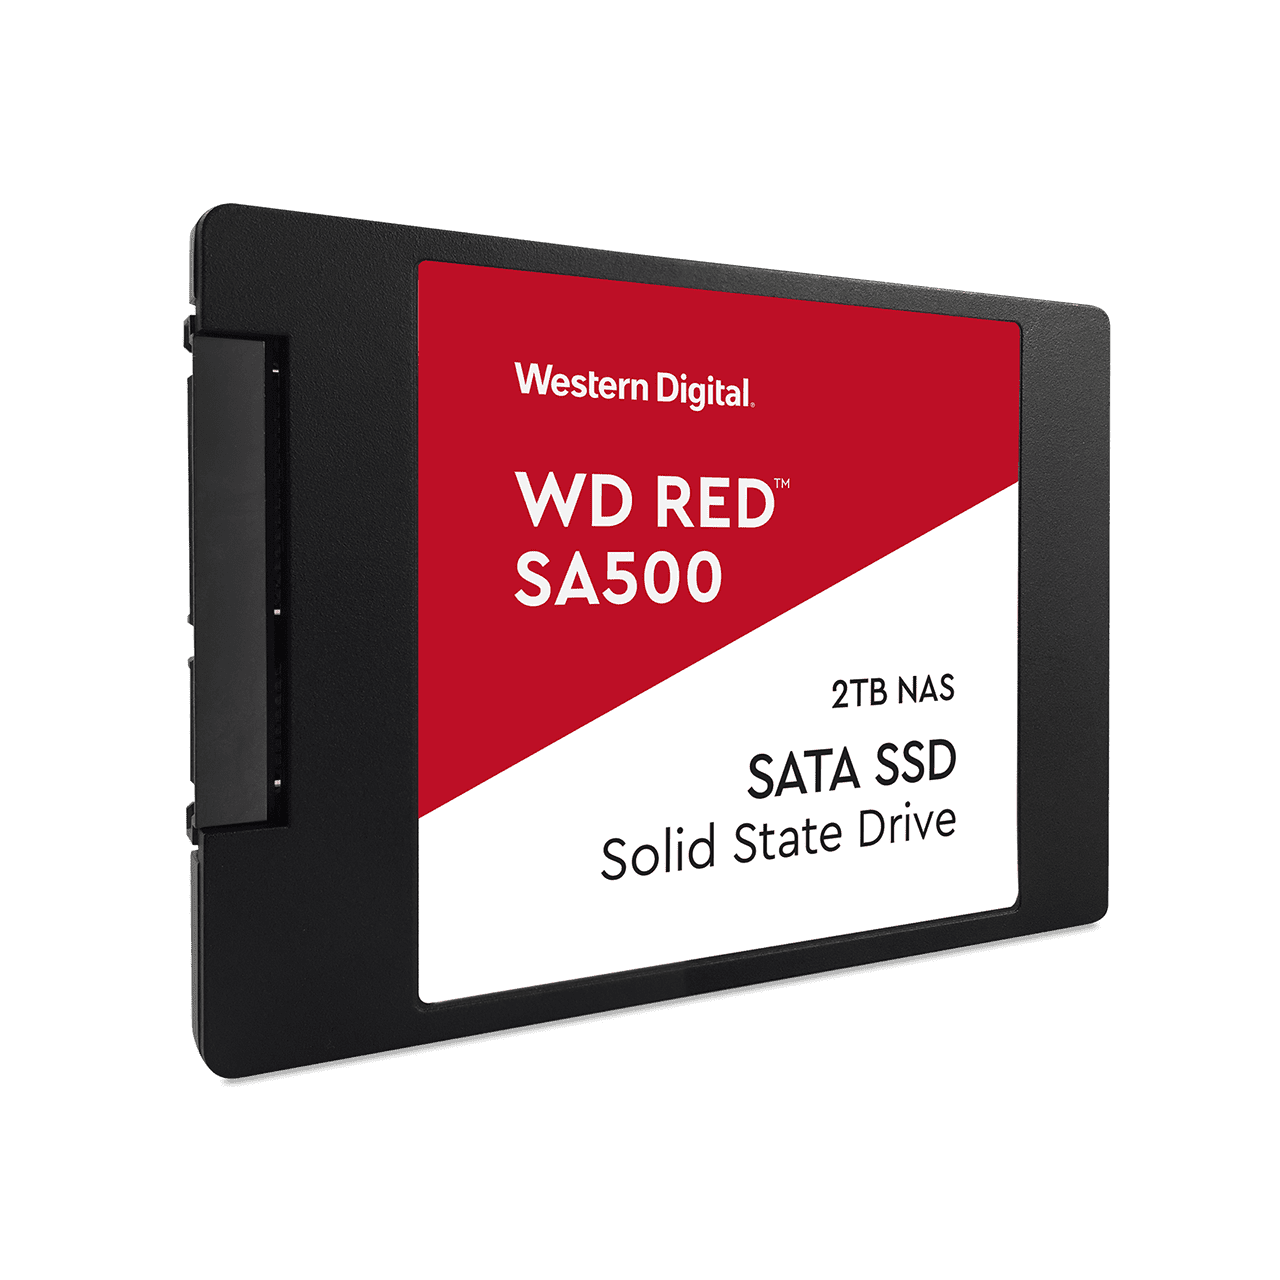 黒いパッケージに赤いと白のラベルのWD RED SA500の製品画像